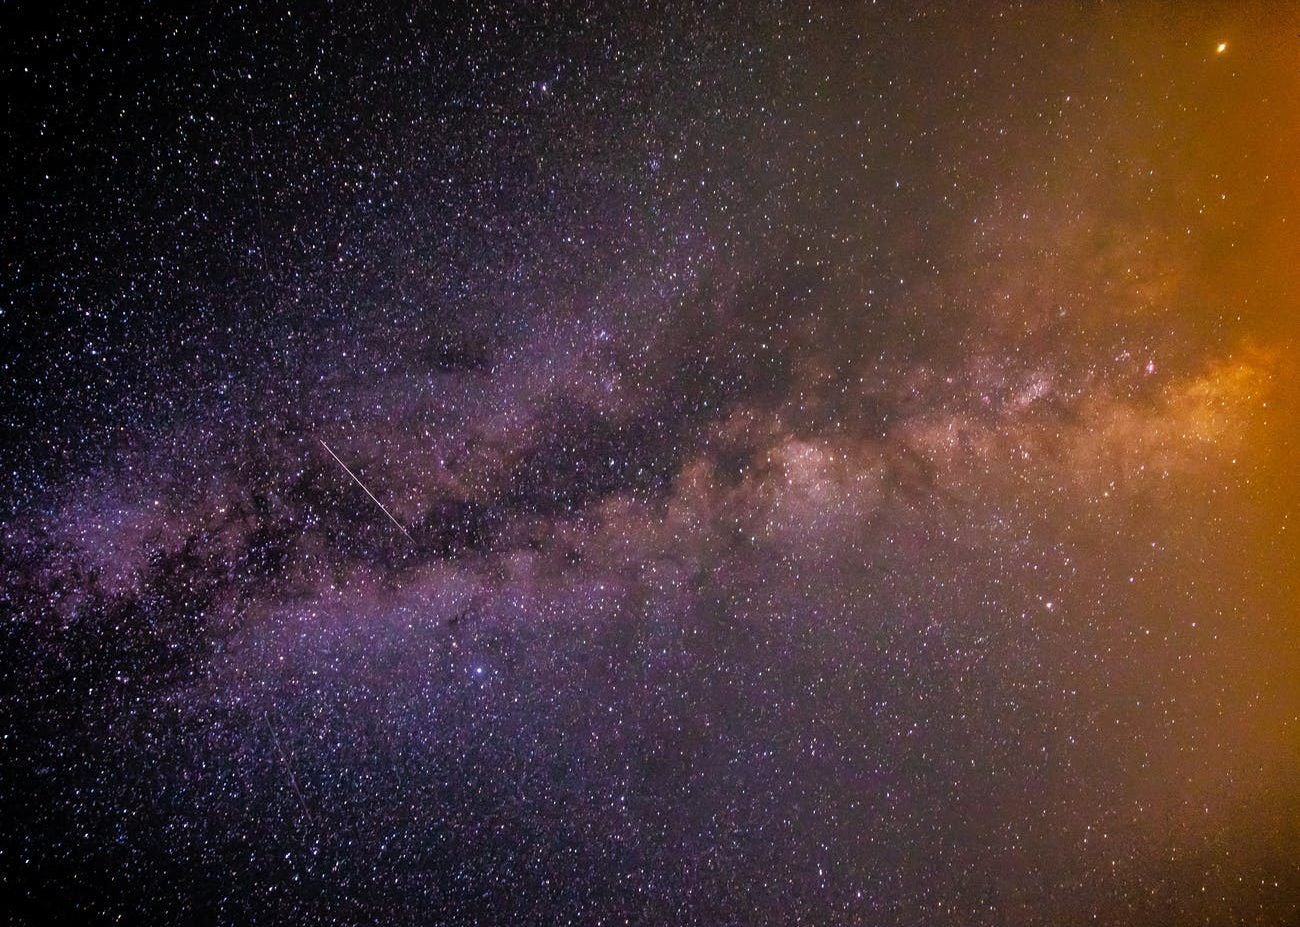 photo of night sky full of stars